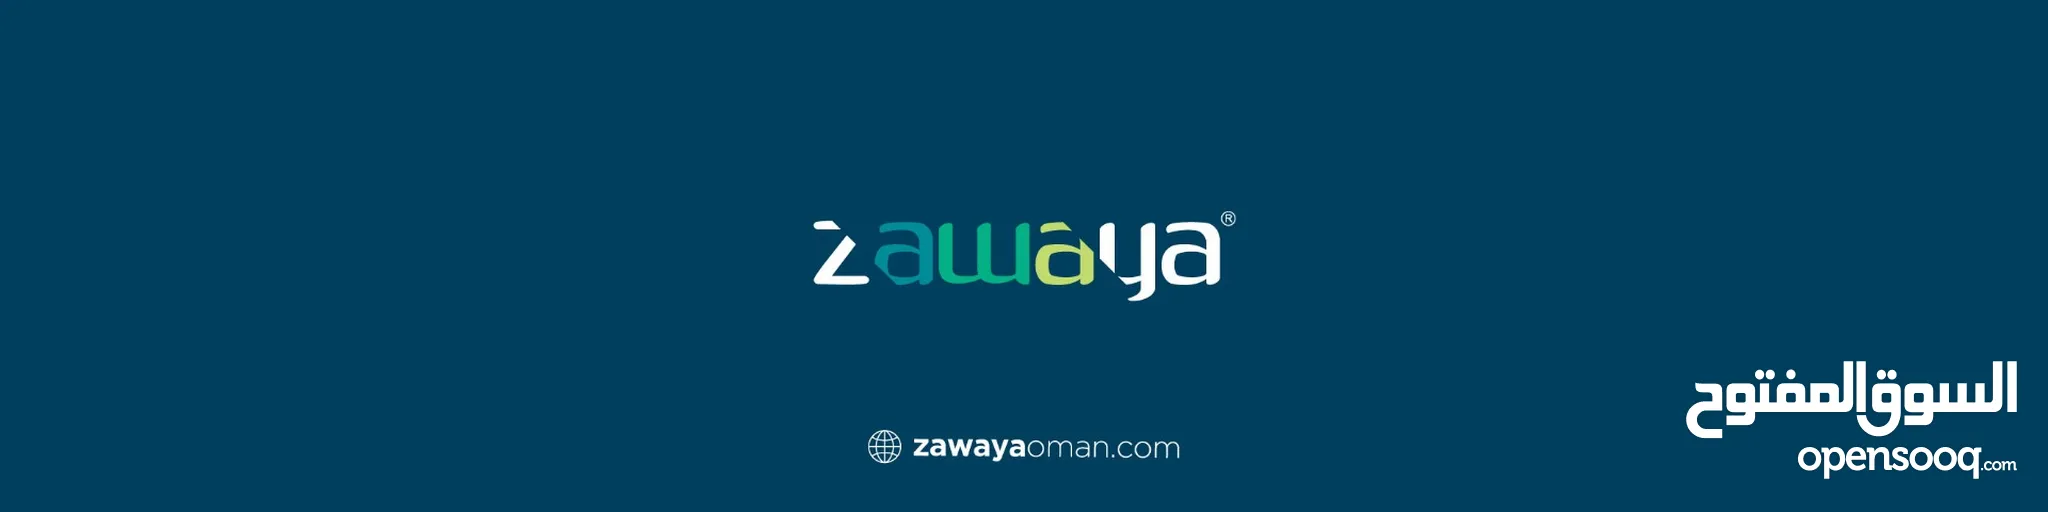 Zawaya